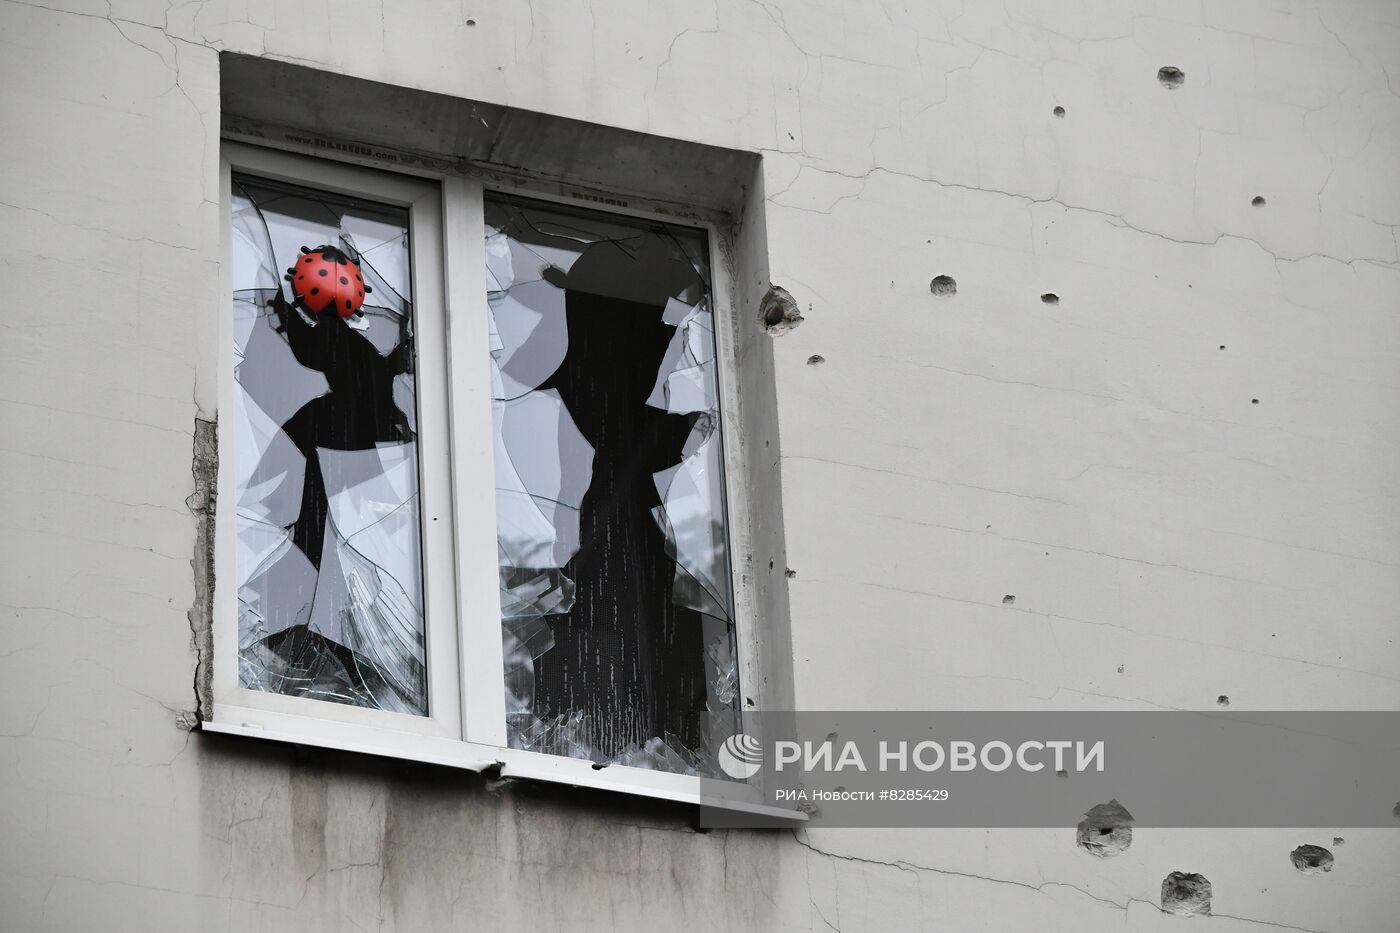 ВСУ обстреляли центр Донецка